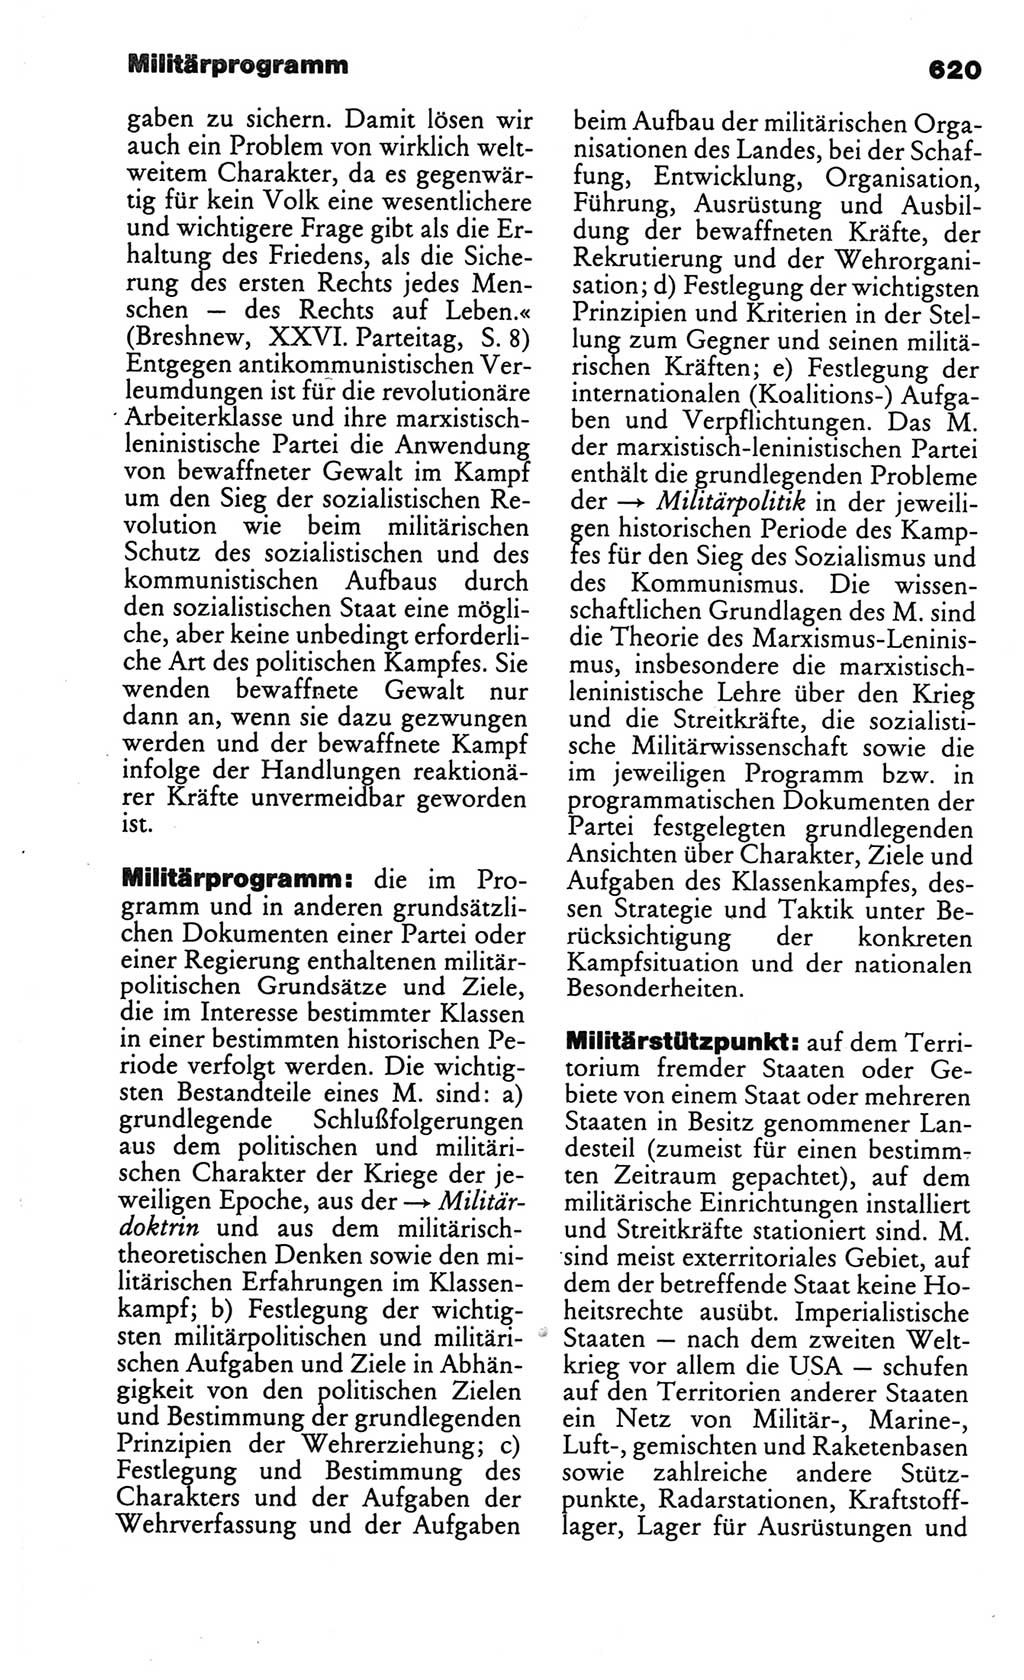 Kleines politisches Wörterbuch [Deutsche Demokratische Republik (DDR)] 1986, Seite 620 (Kl. pol. Wb. DDR 1986, S. 620)